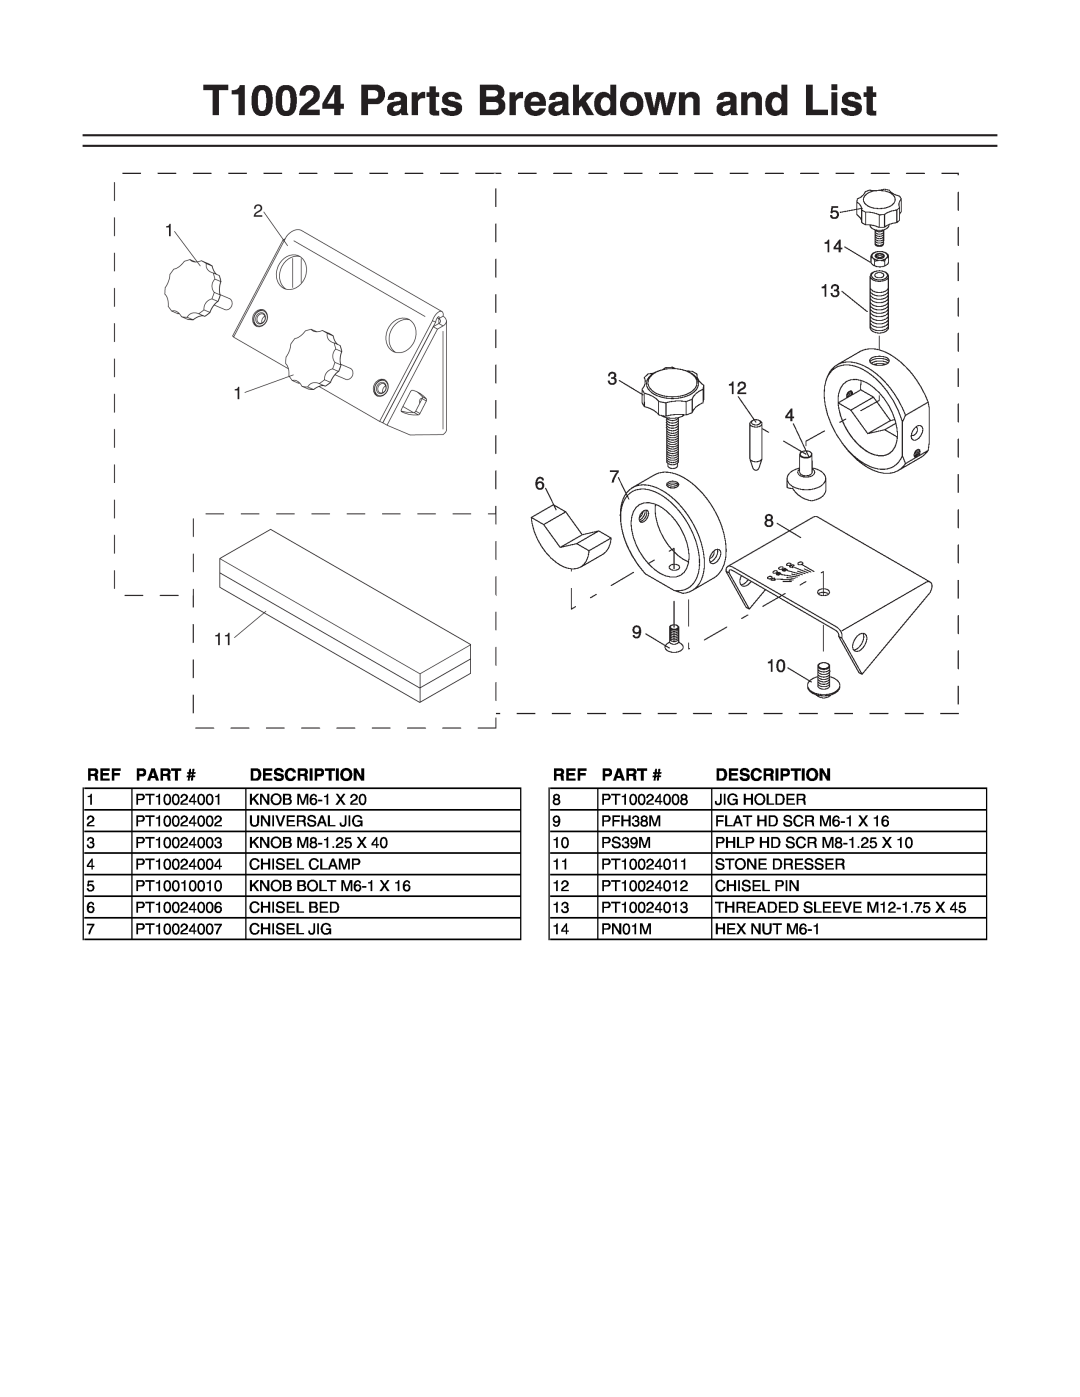 Grizzly instruction sheet T10024 Parts Breakdown and List, Part #, Description 